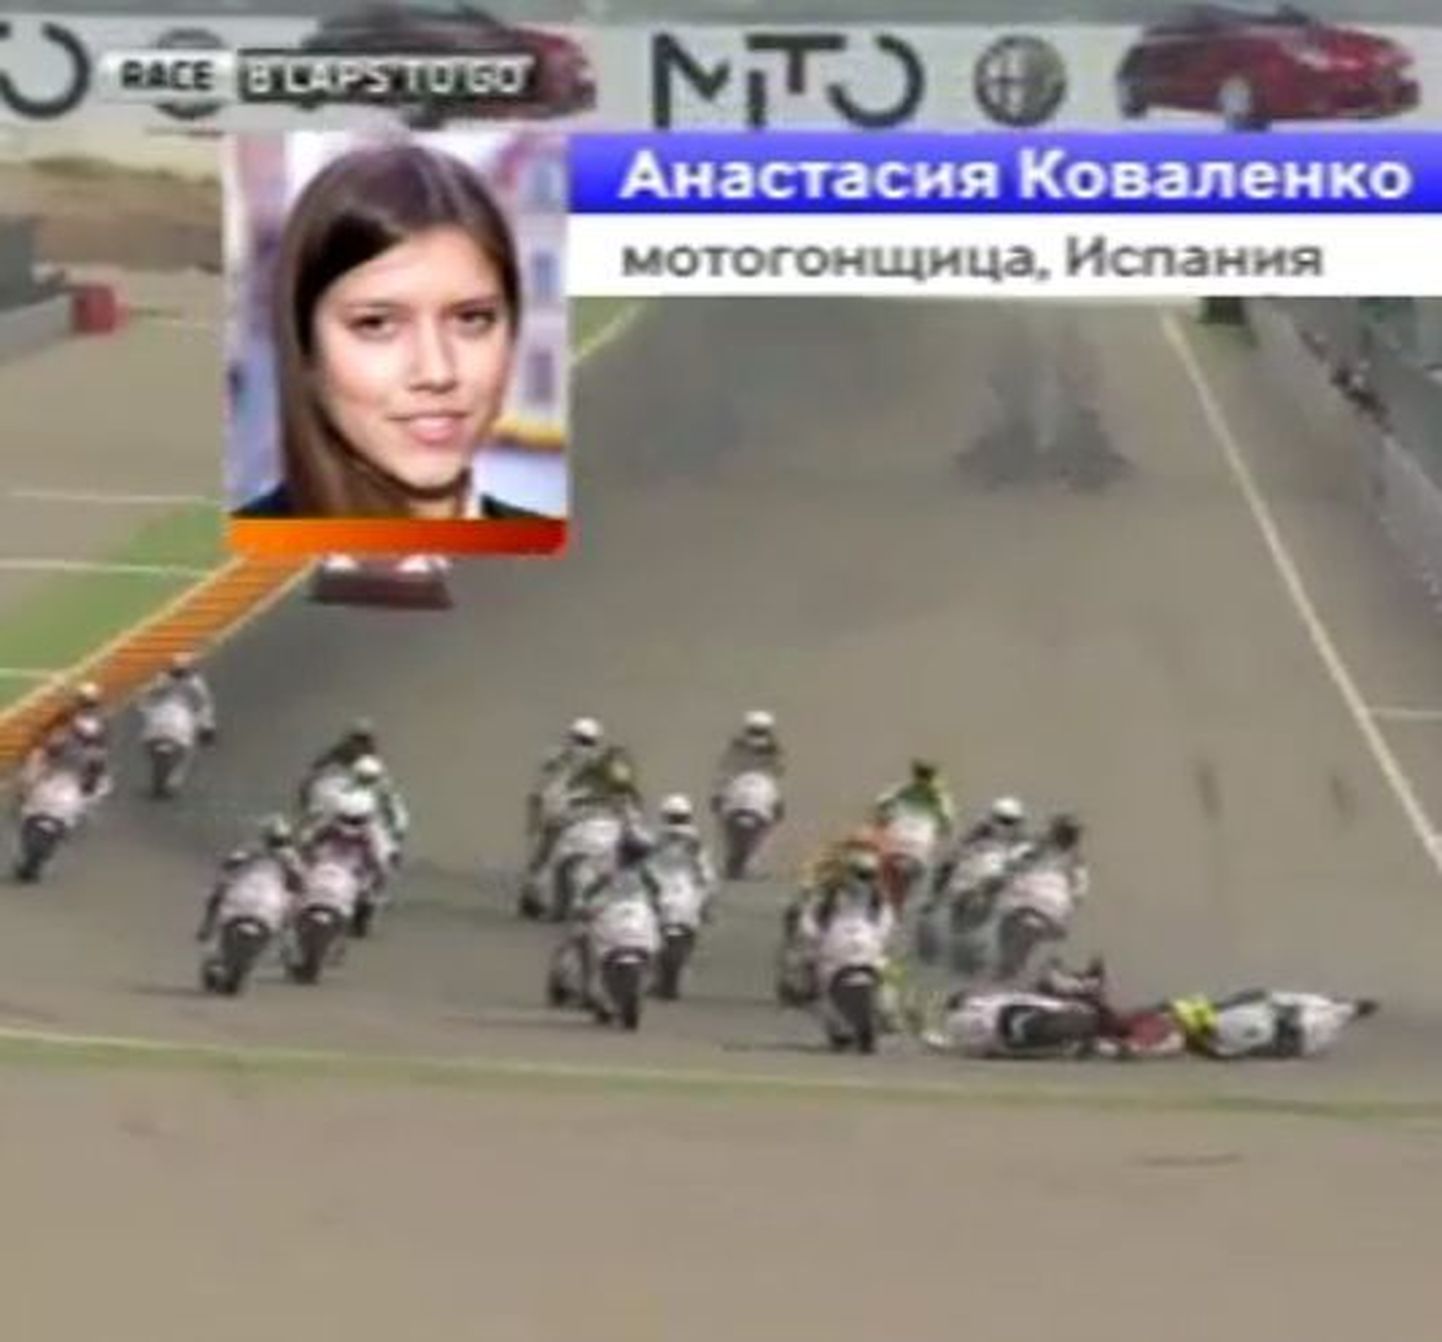 Во время гонки на первом же повороте четыре мотоциклиста вылетели с трассы, а двое упали.